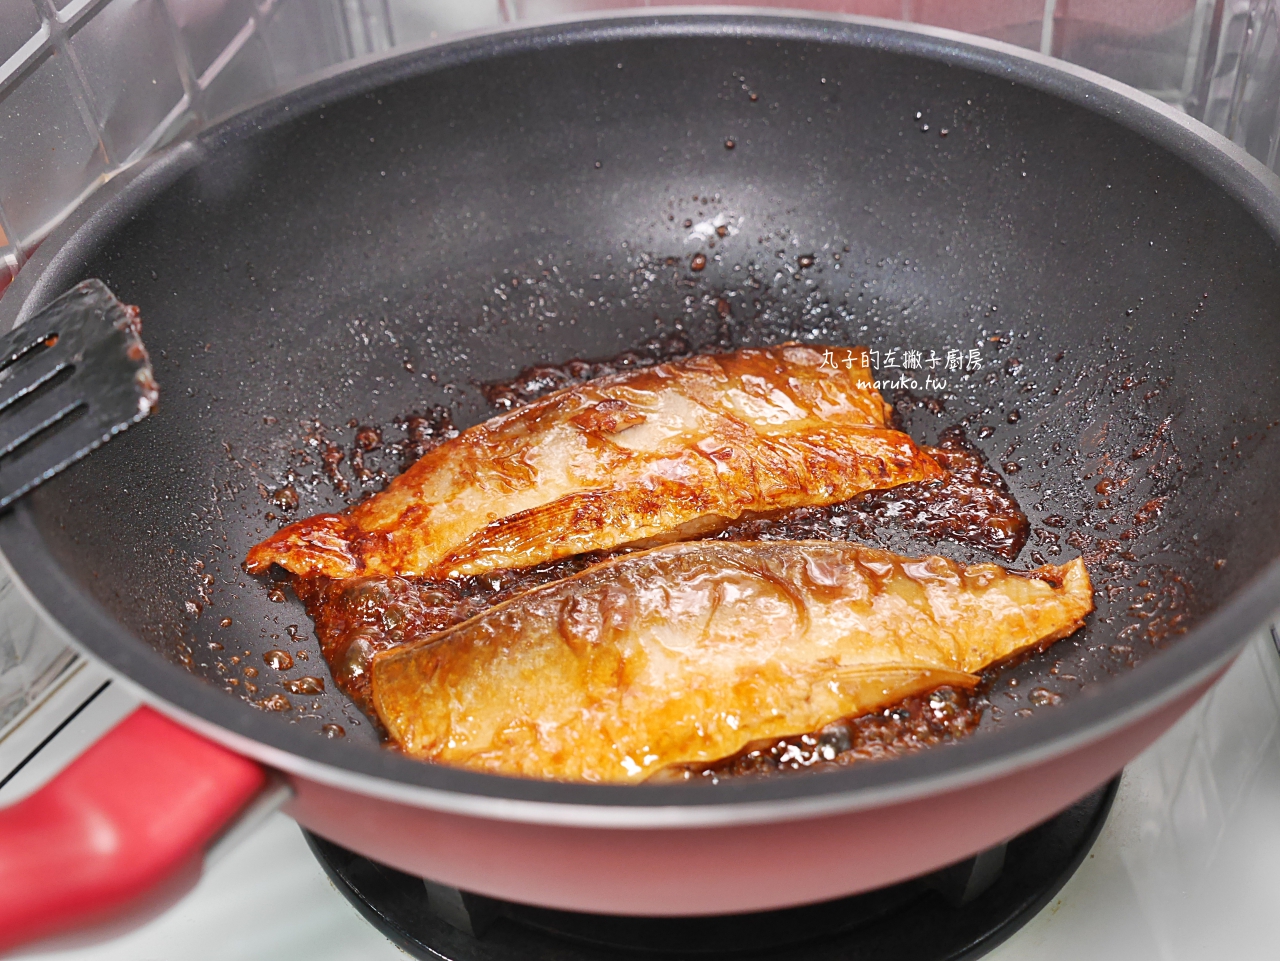 【食譜】蒲燒虱目魚 鰻魚蒲燒醬汁 四種簡單食材 輕鬆入味 @Maruko與美食有個約會